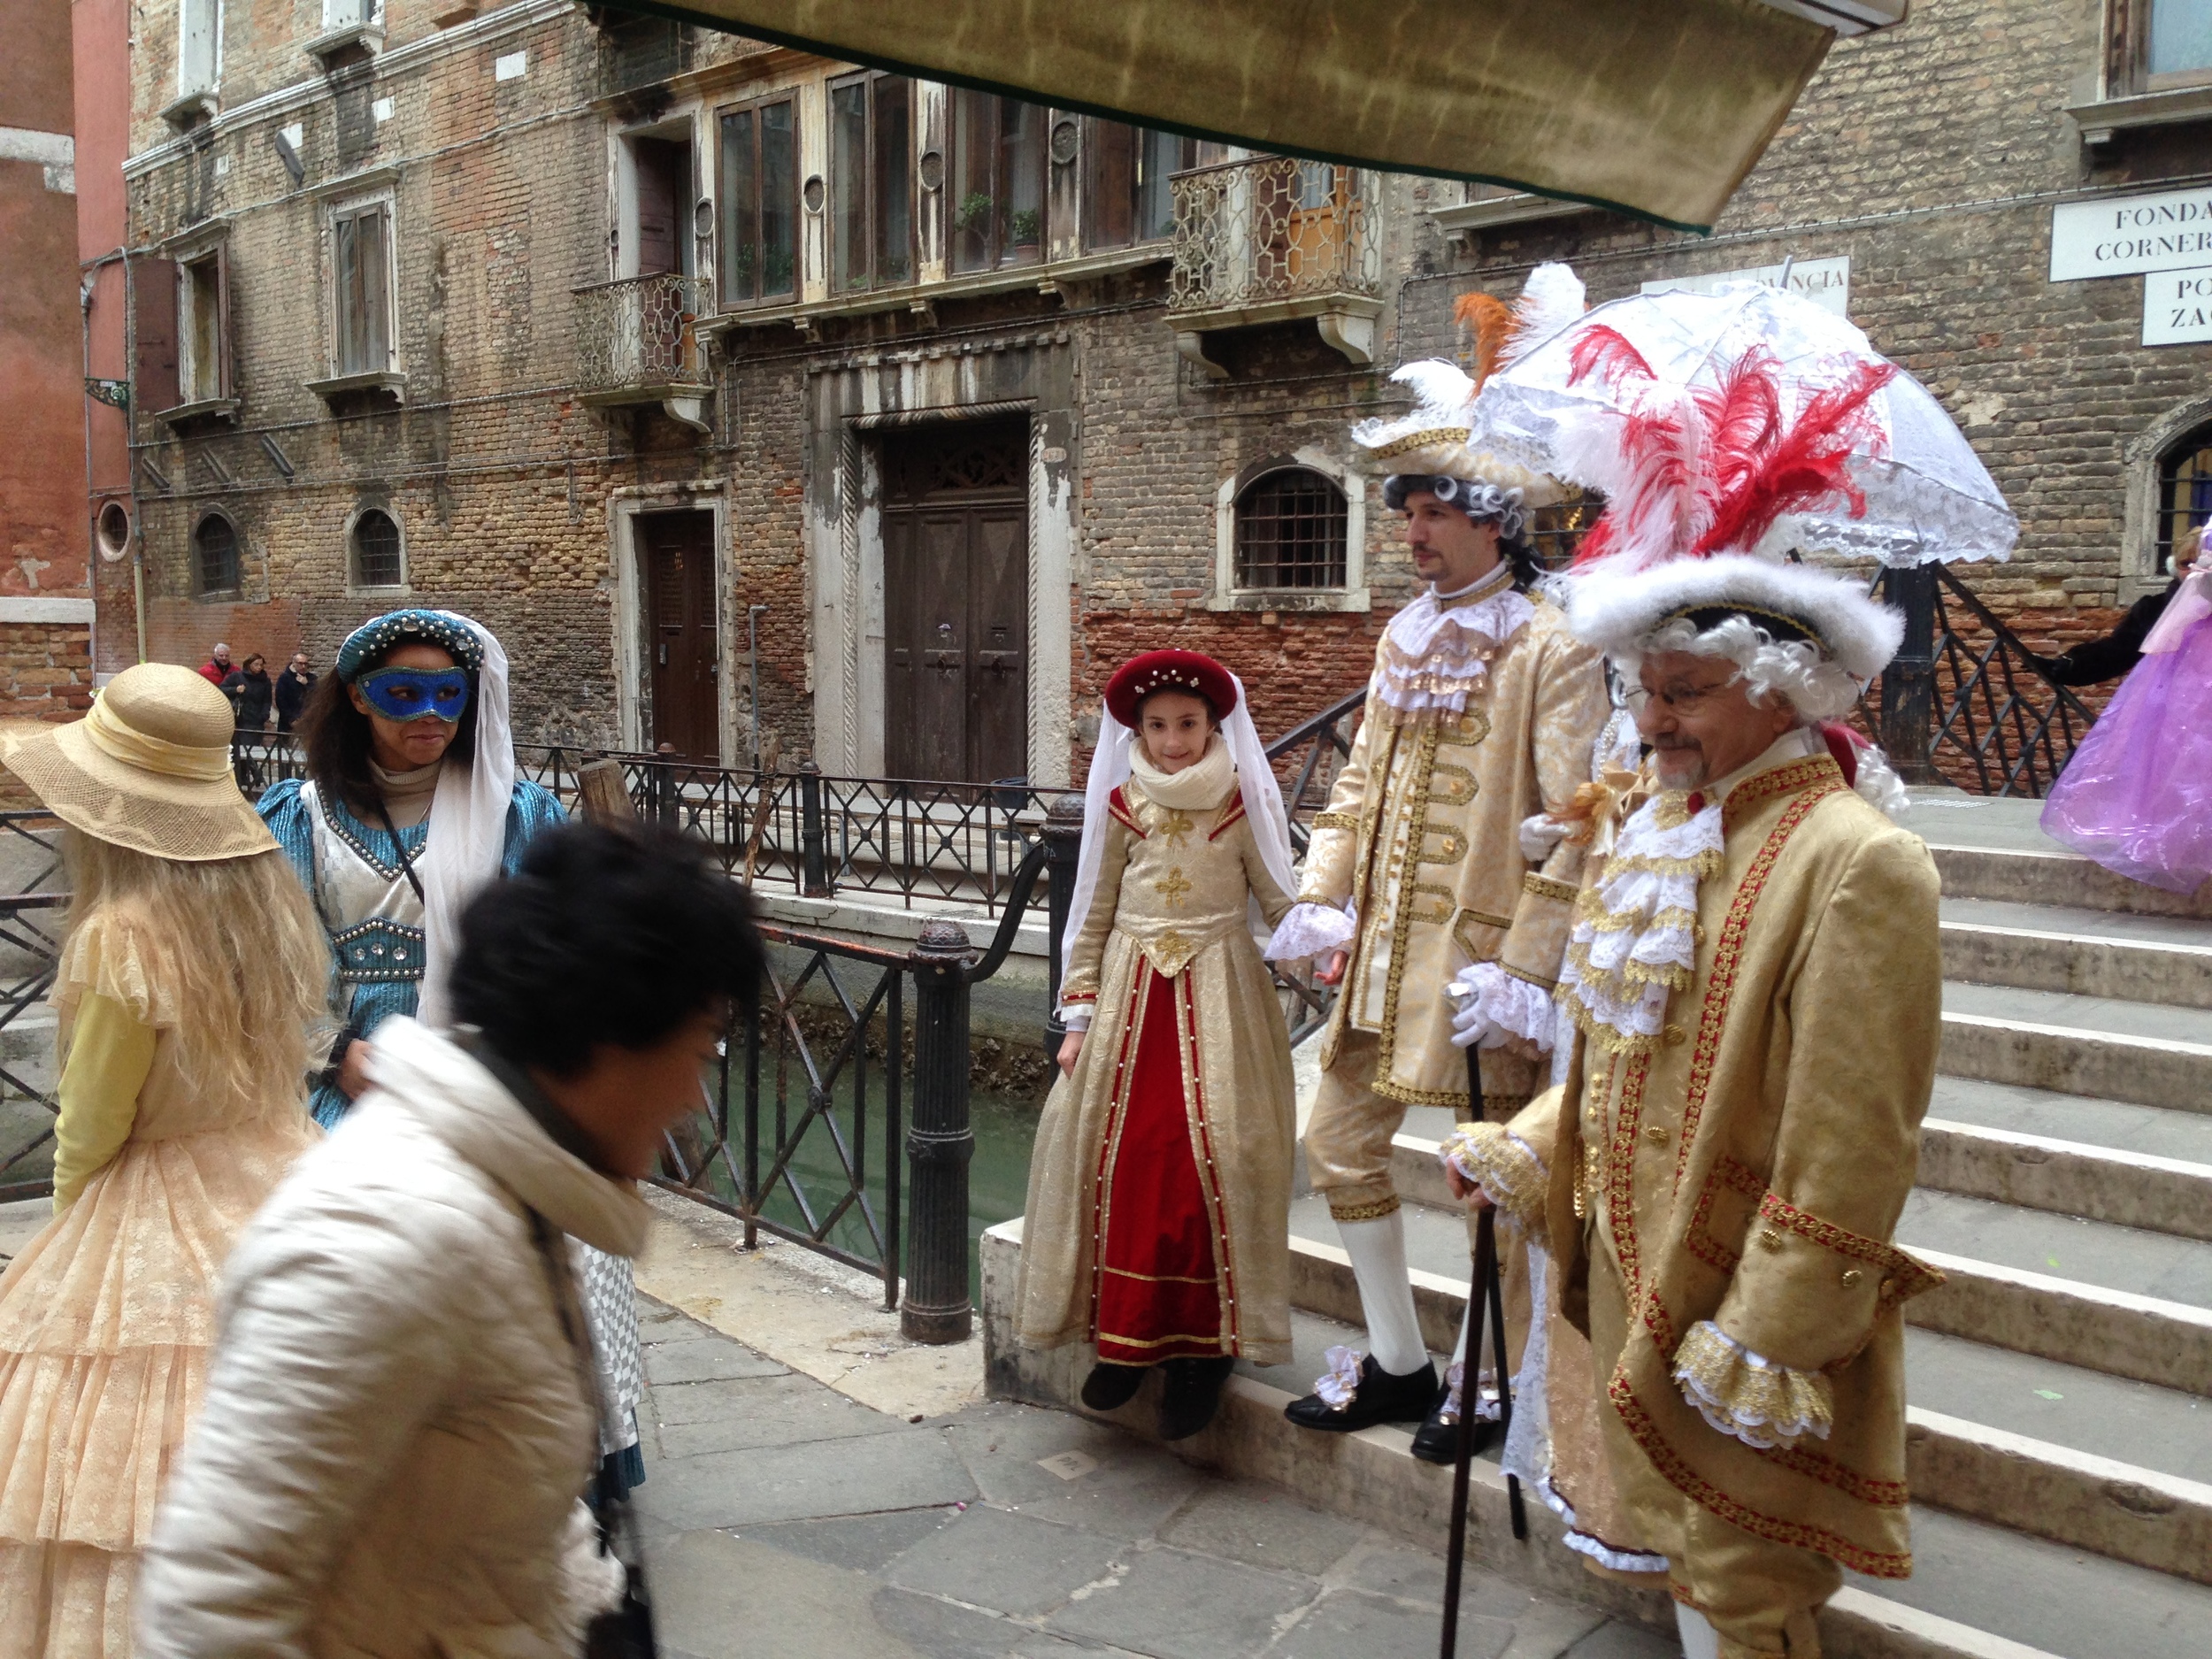 Carnevale in Venezia